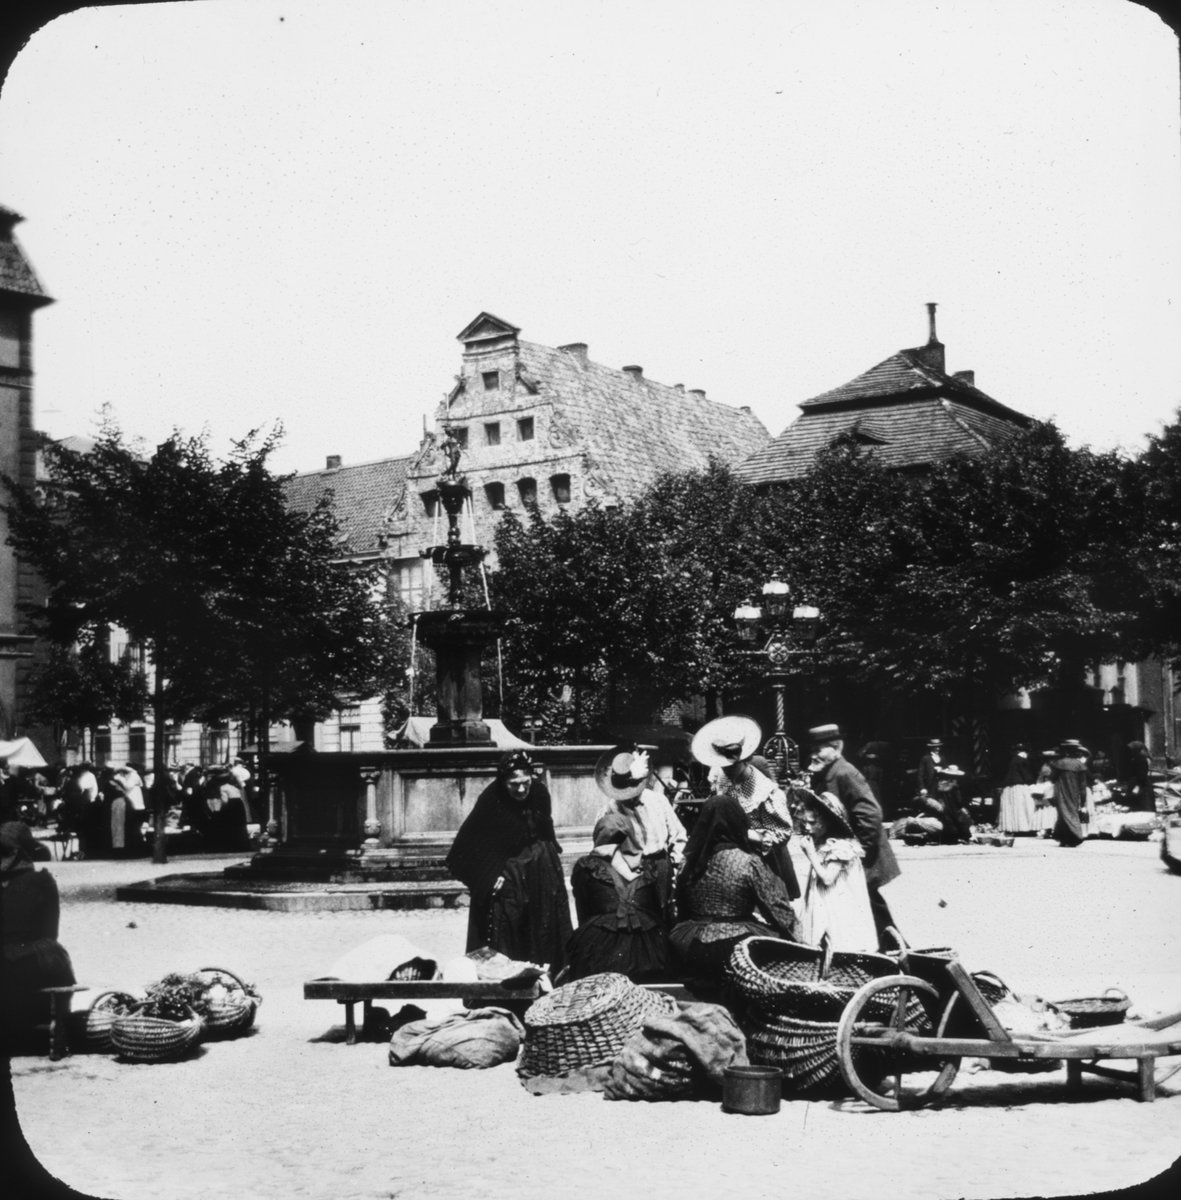 Skioptikonbild med motiv av kvinnor med korgar vid Luna-Brunnen på torget i Lüneburg.
Bilden har förvarats i kartong märkt: Resan 1906. Lüneburg 8.